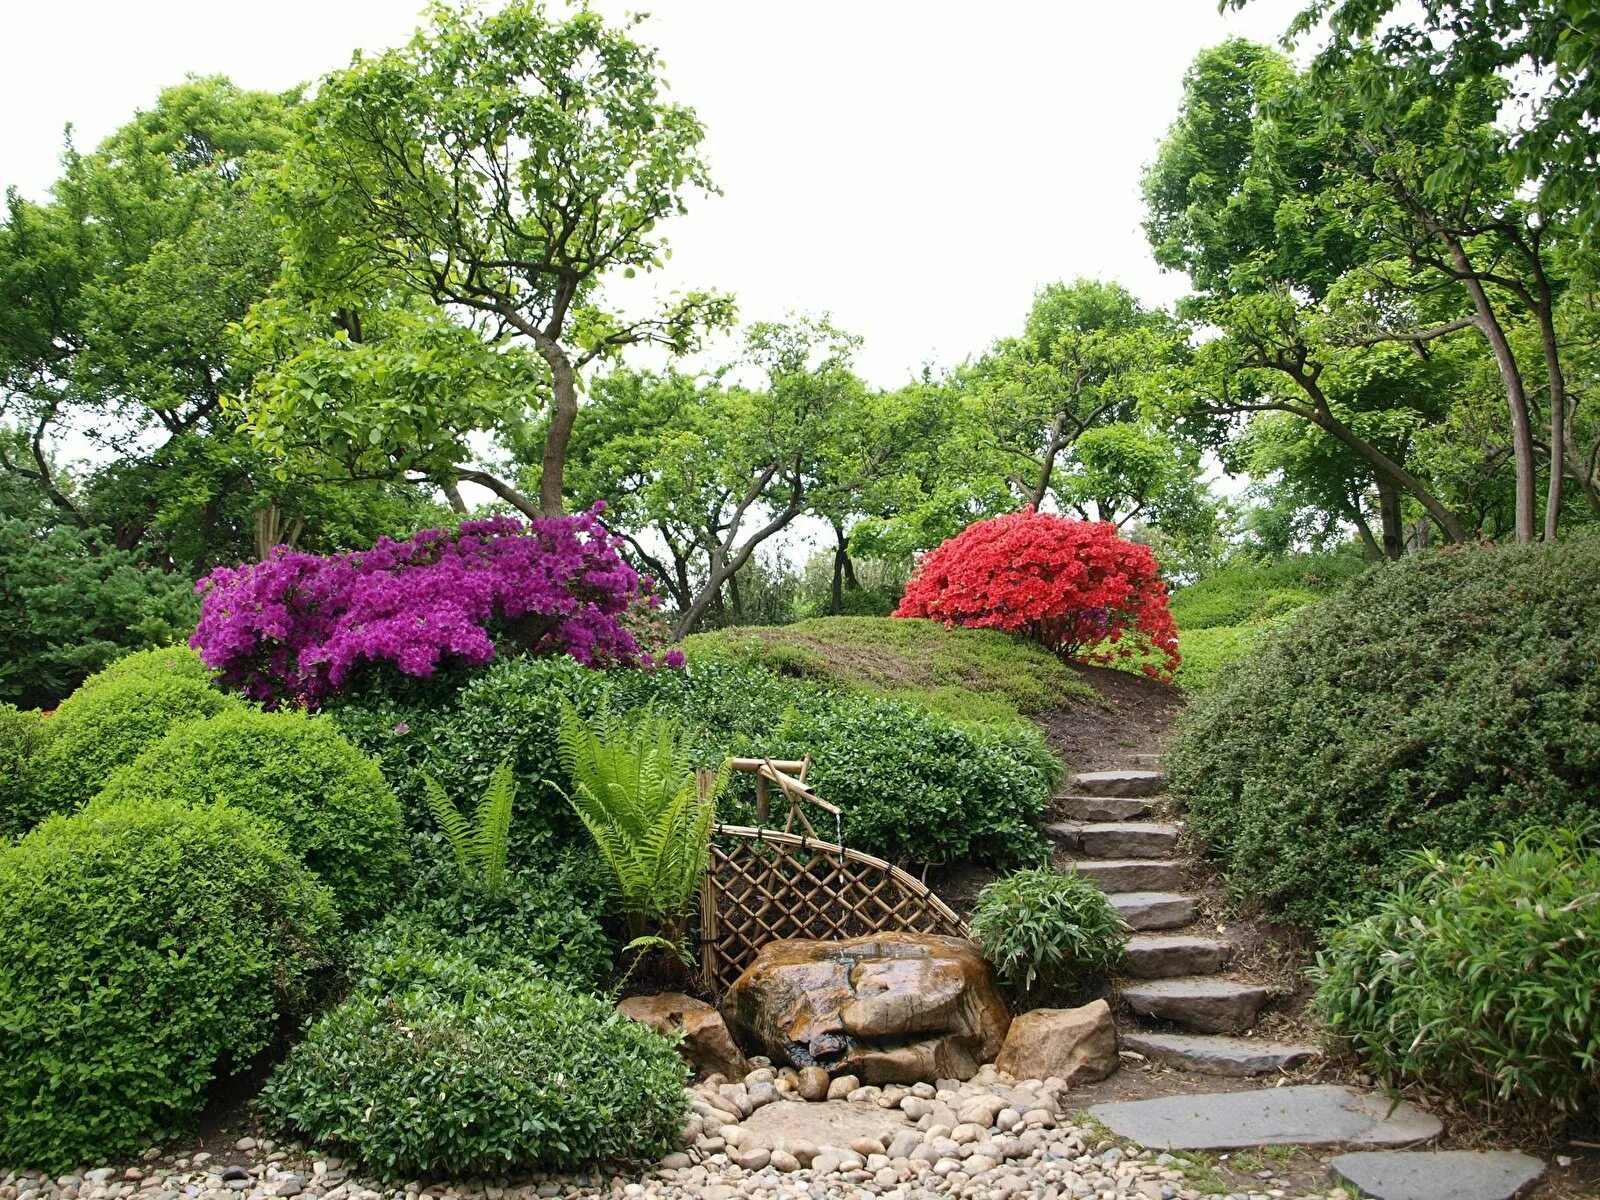 Ландшафтный пейзажный сад Японии. Ландшафтный пейзажный парковый стиль. Японский сад ландшафтный дизайн холмистый. Парк пейзажного стиля английский сад. Название природного ландшафта